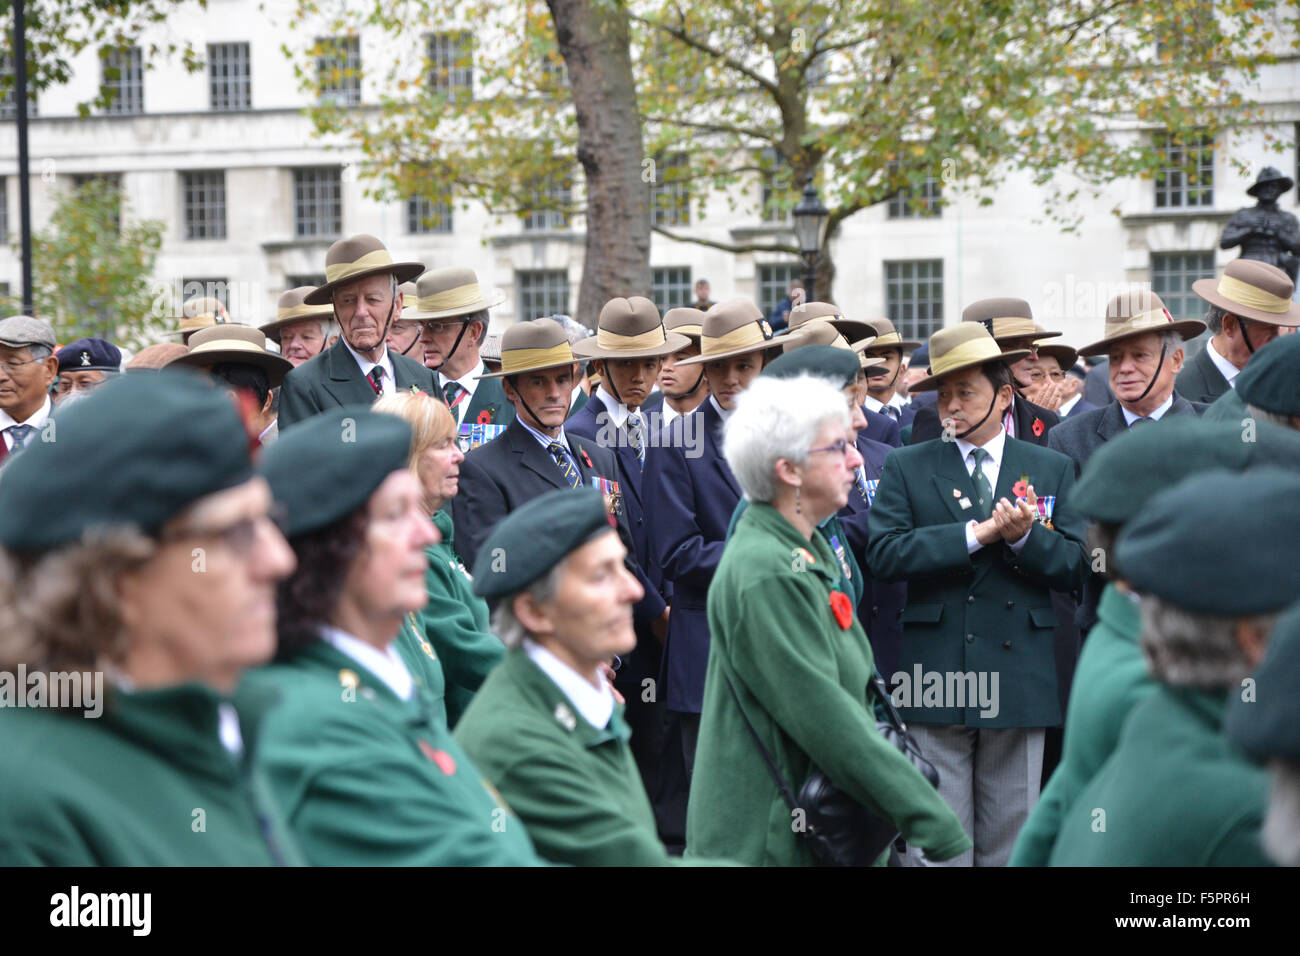 Il cenotafio, Whitehall veterani di guerra e i membri delle forze armate di prendere parte nel ricordo domenica cerimonia Foto Stock